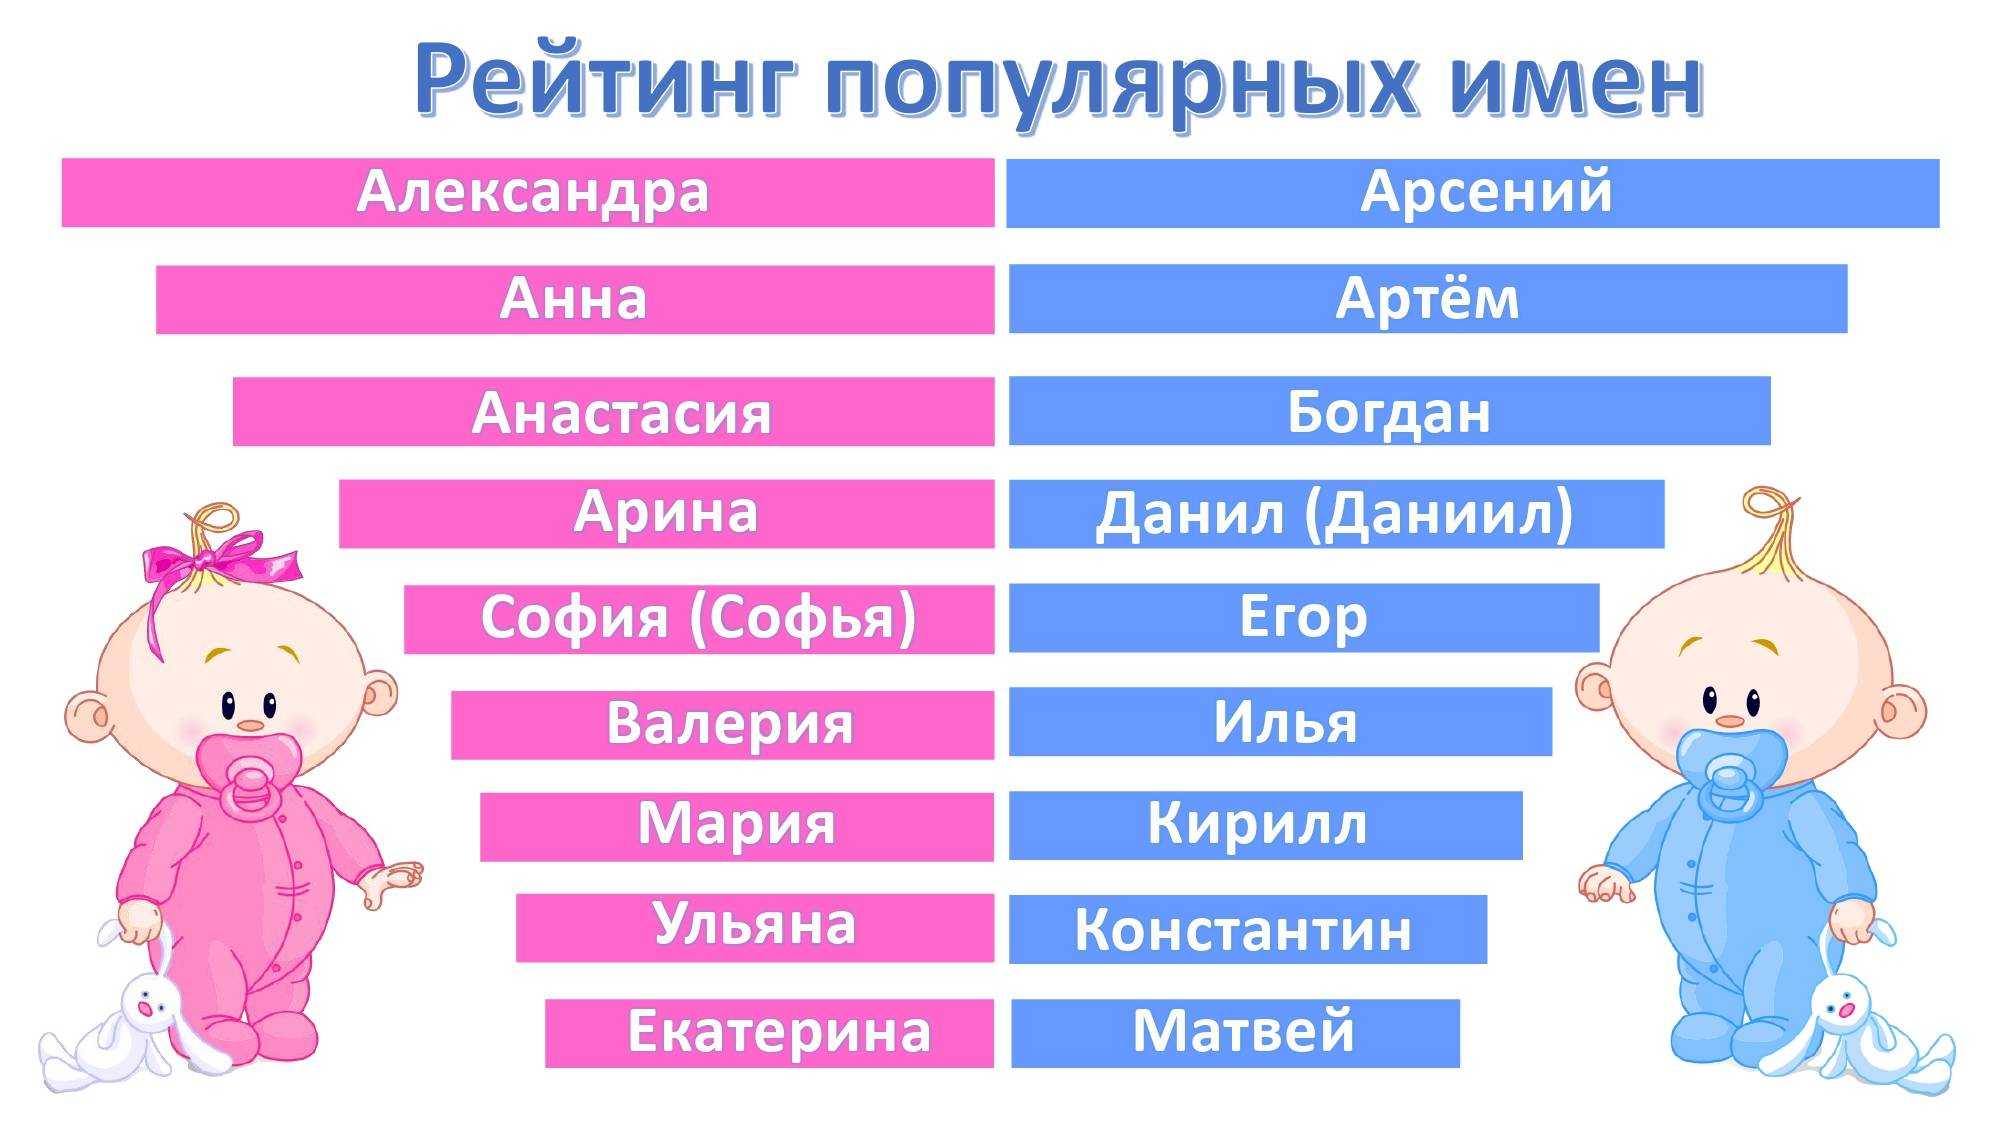 Популярные имена девочек 2020 женские, самые в россии, список популярных имен, какое популярное?